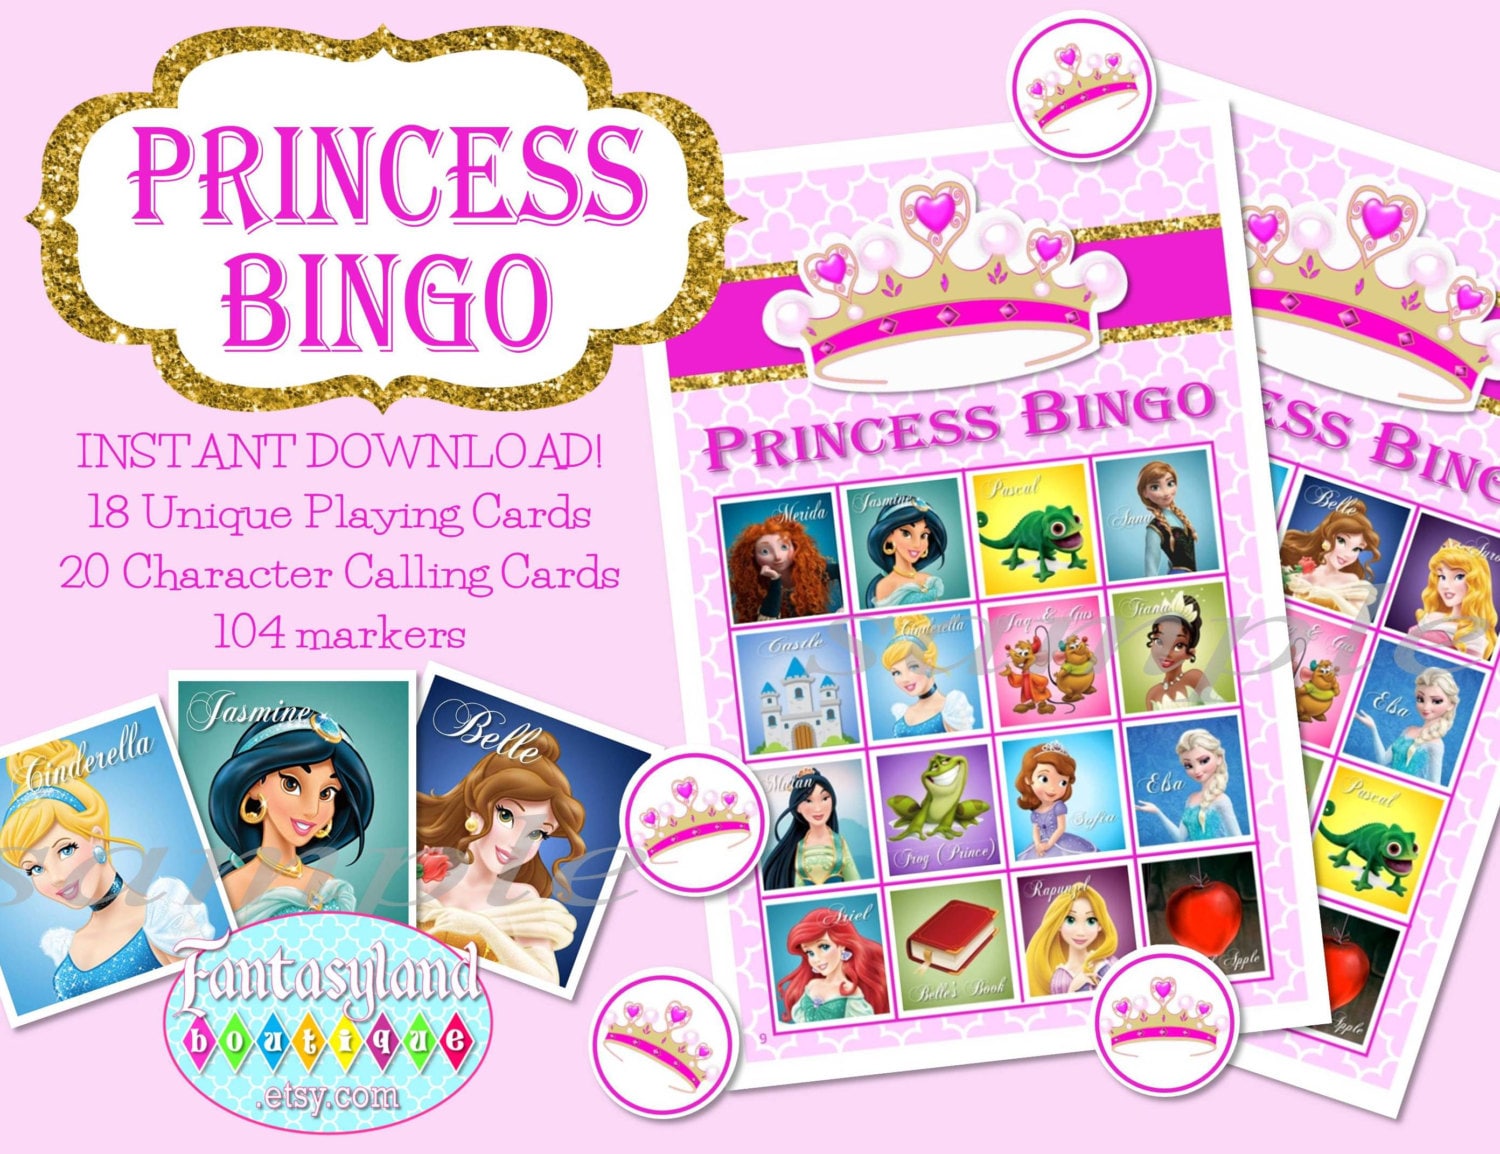 Princess Bingo Times